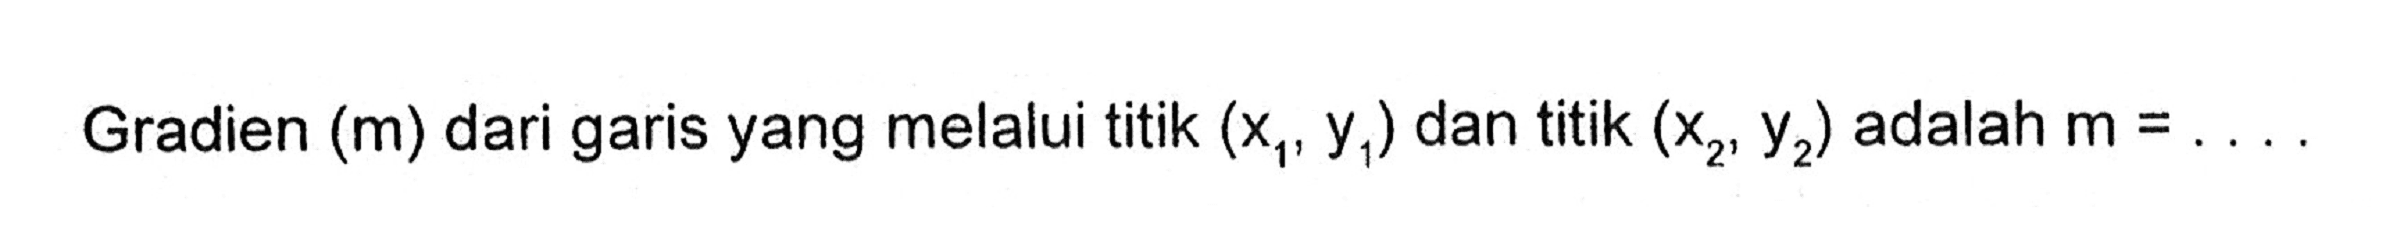 Gradien (m) dari garis yang melalui titik (x1, y1) dan titik (x2, y2) adalah m =...